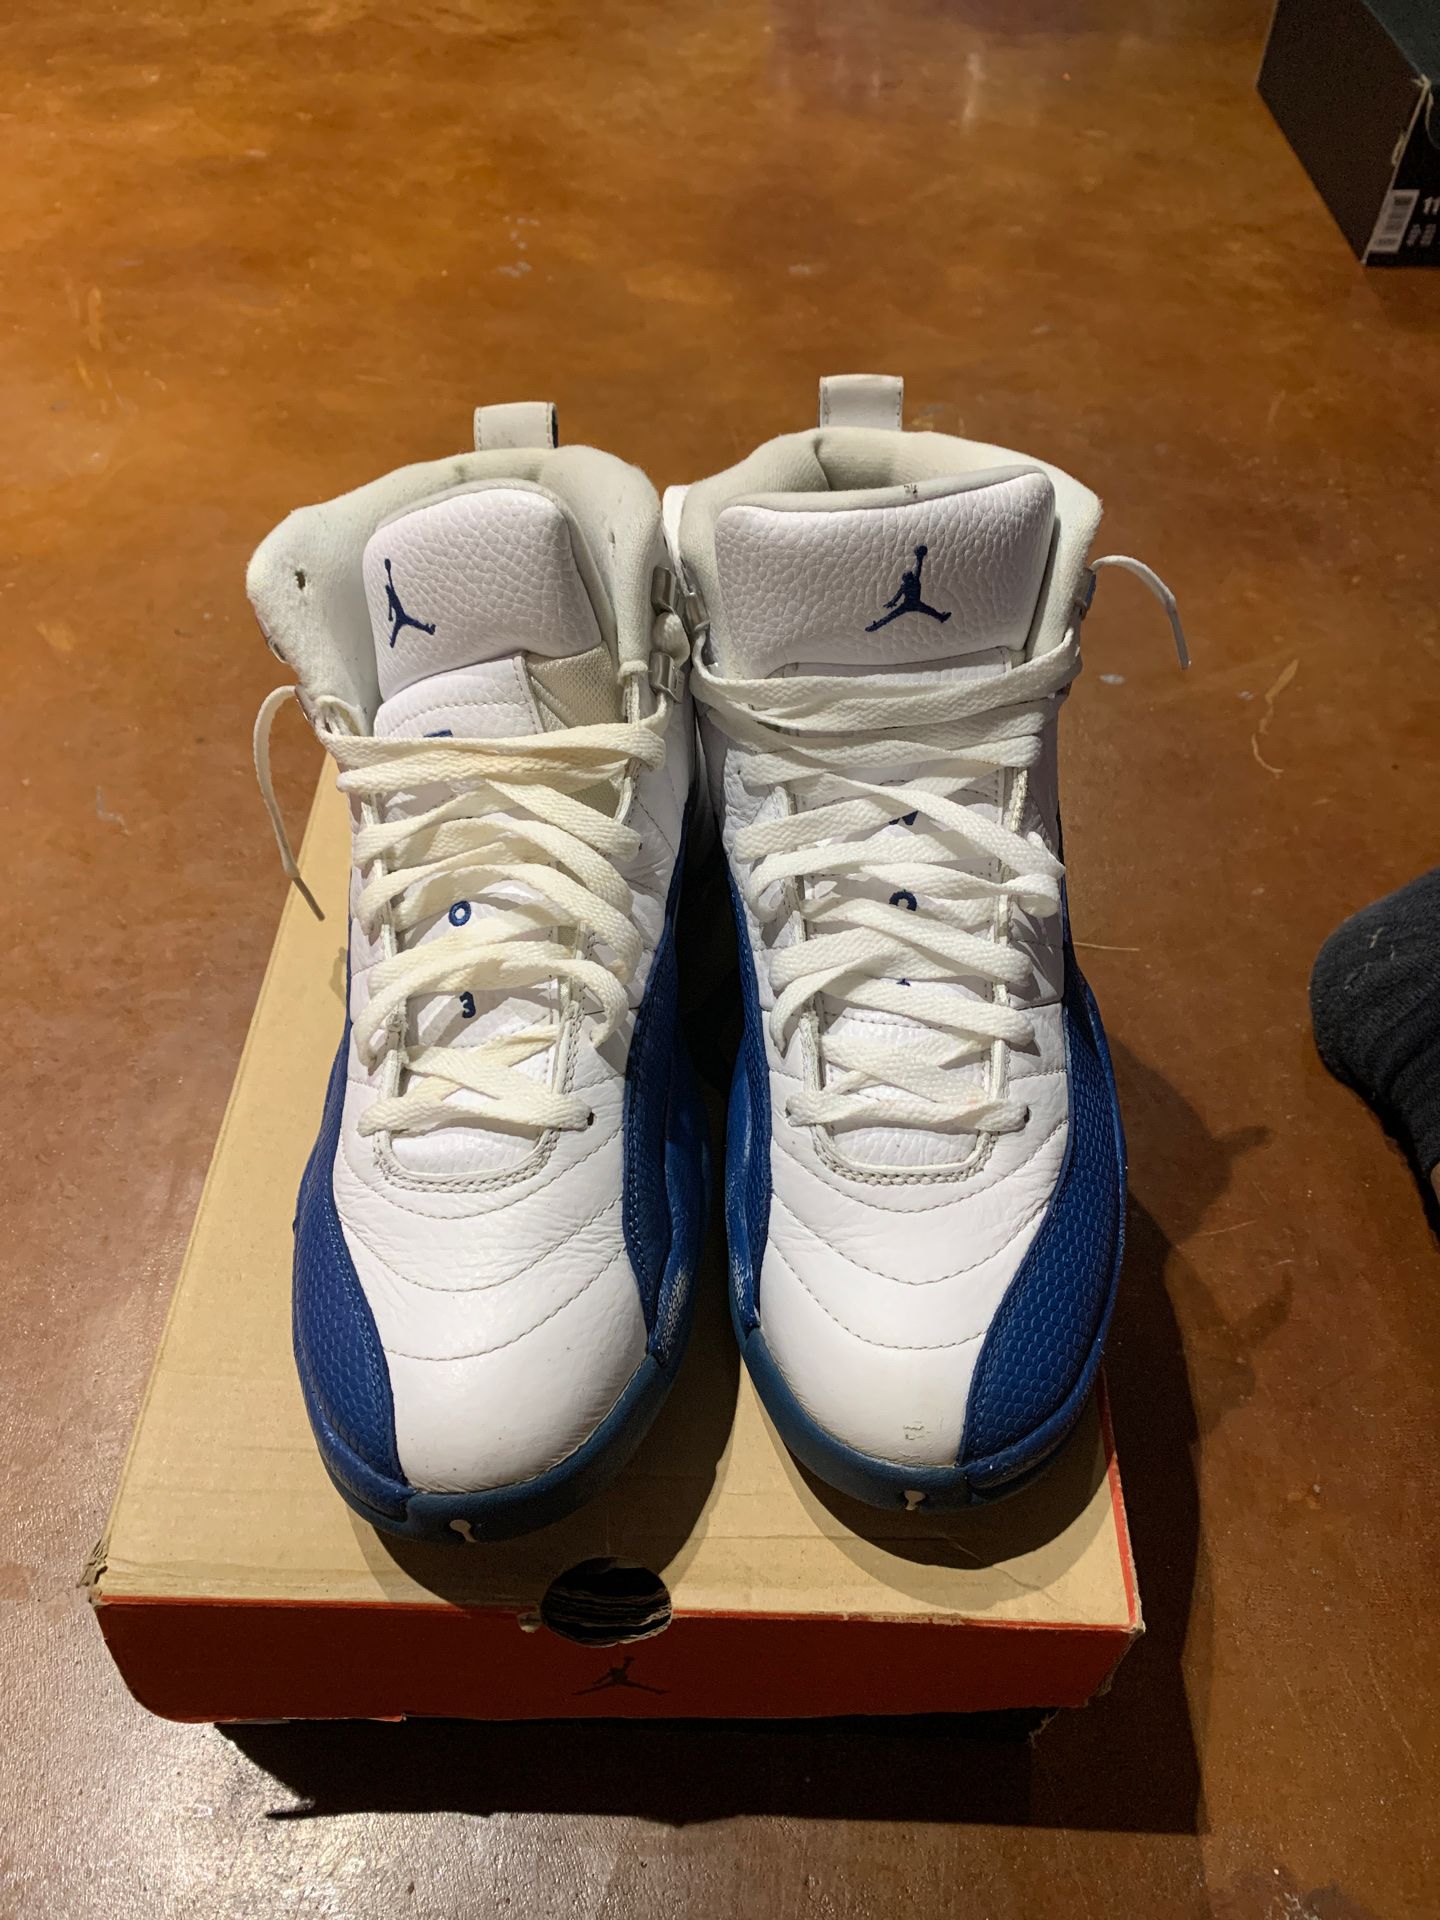 Air Jordan Retro 12 white and blue